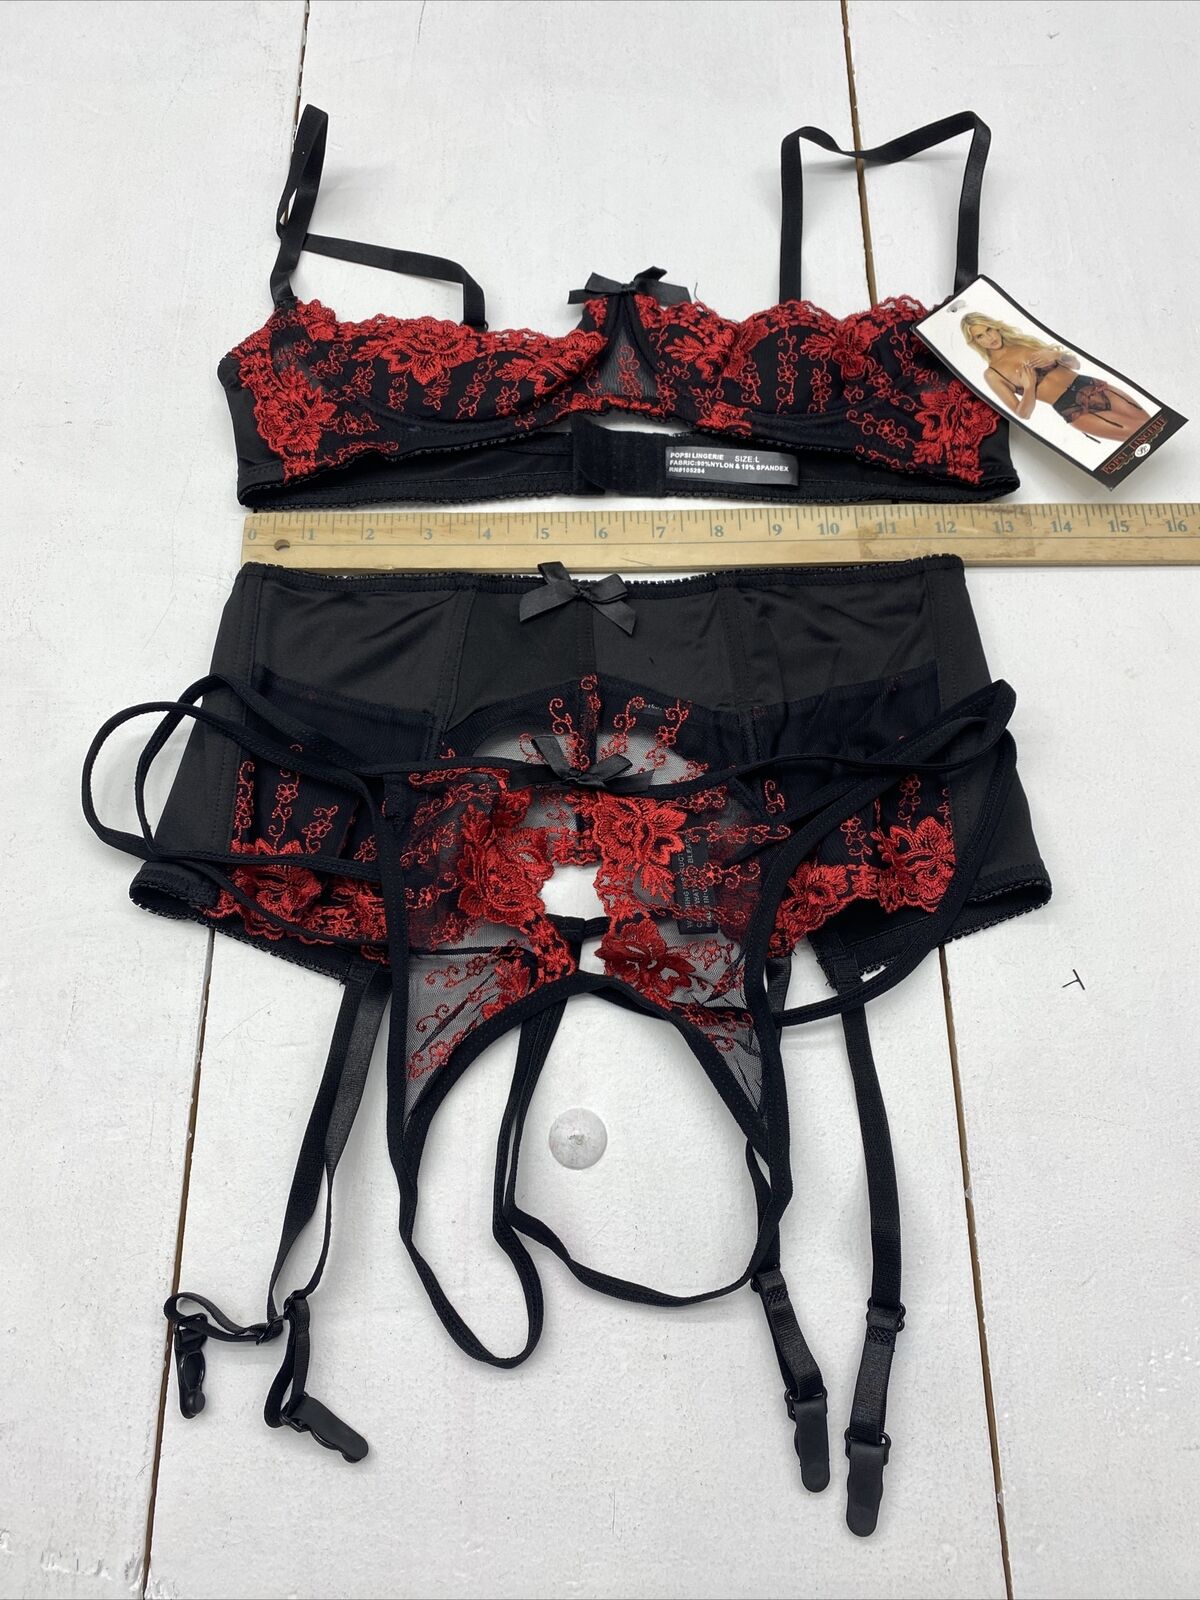 Popsi Lingerie Black/Red Bra Garter Belt Panty 3pc Set Size Large New -  beyond exchange